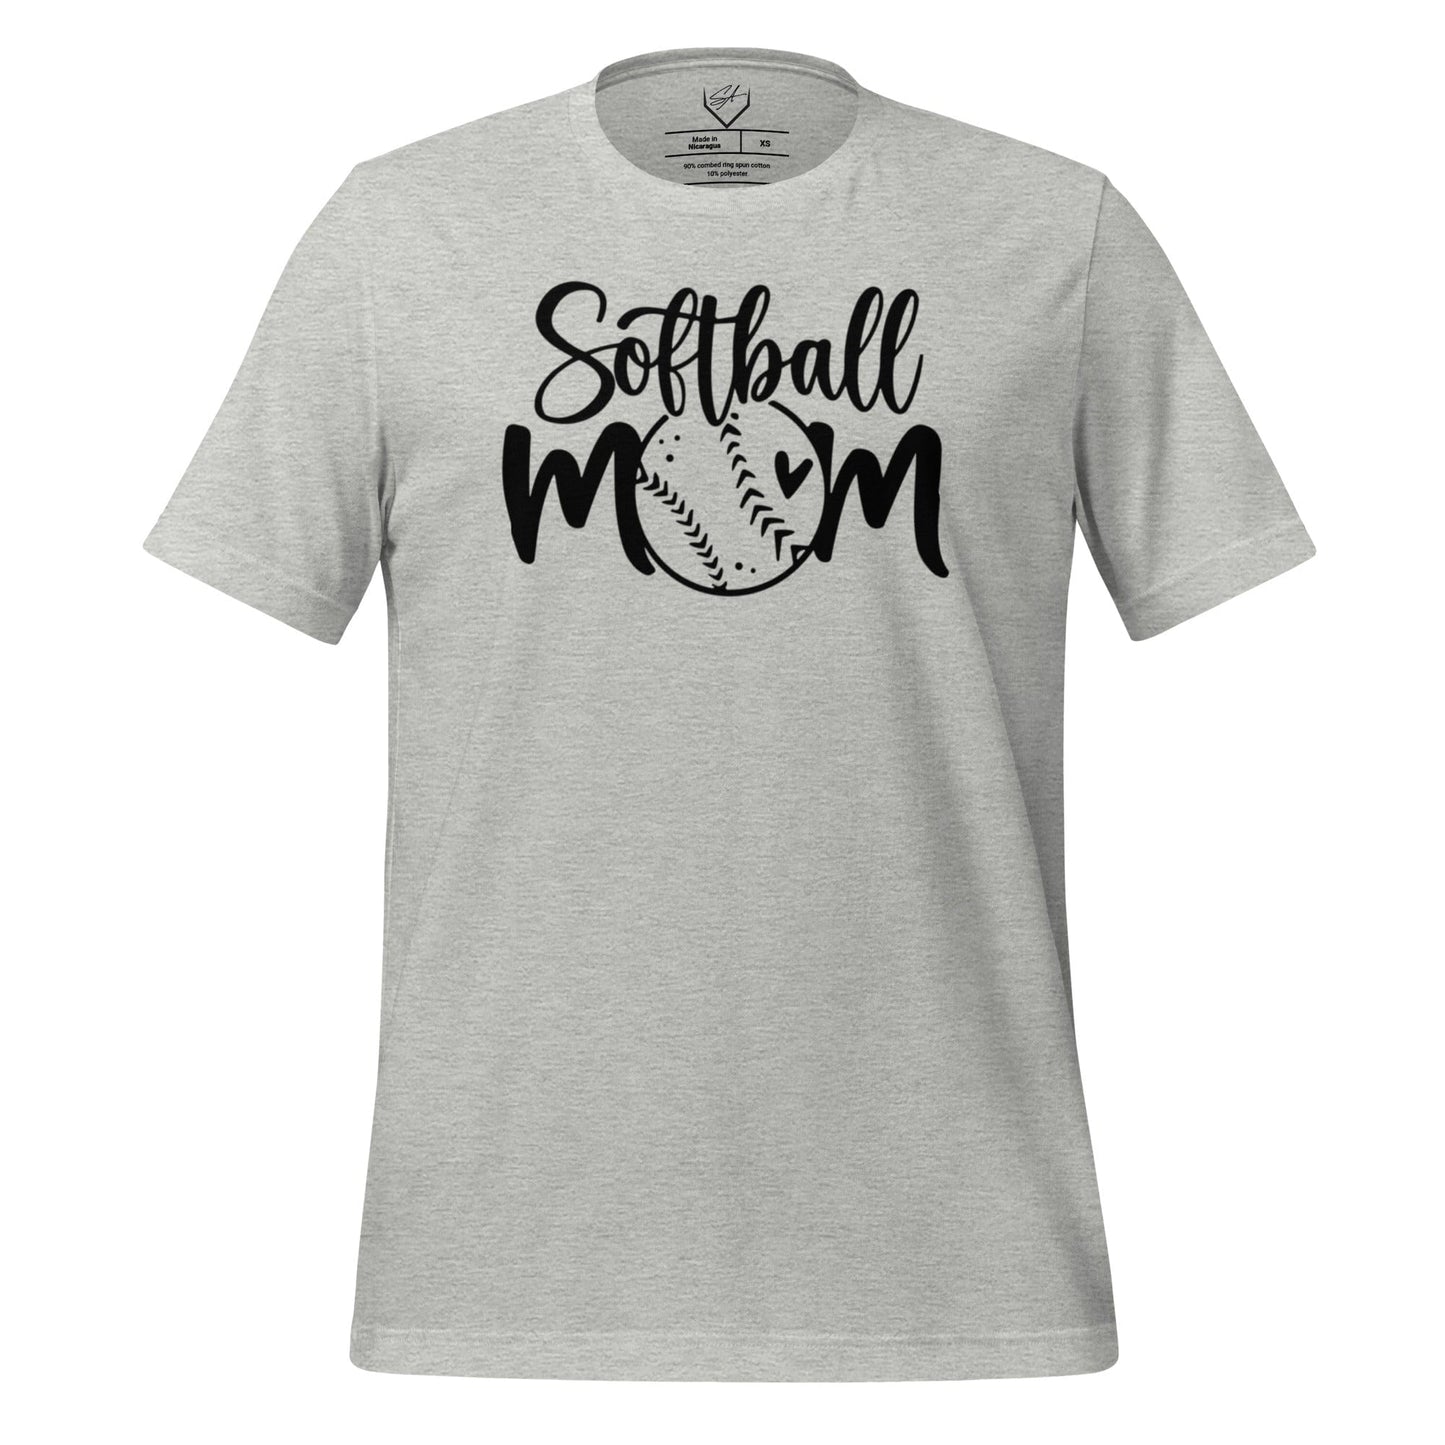 Softball Mom - Adult Tee